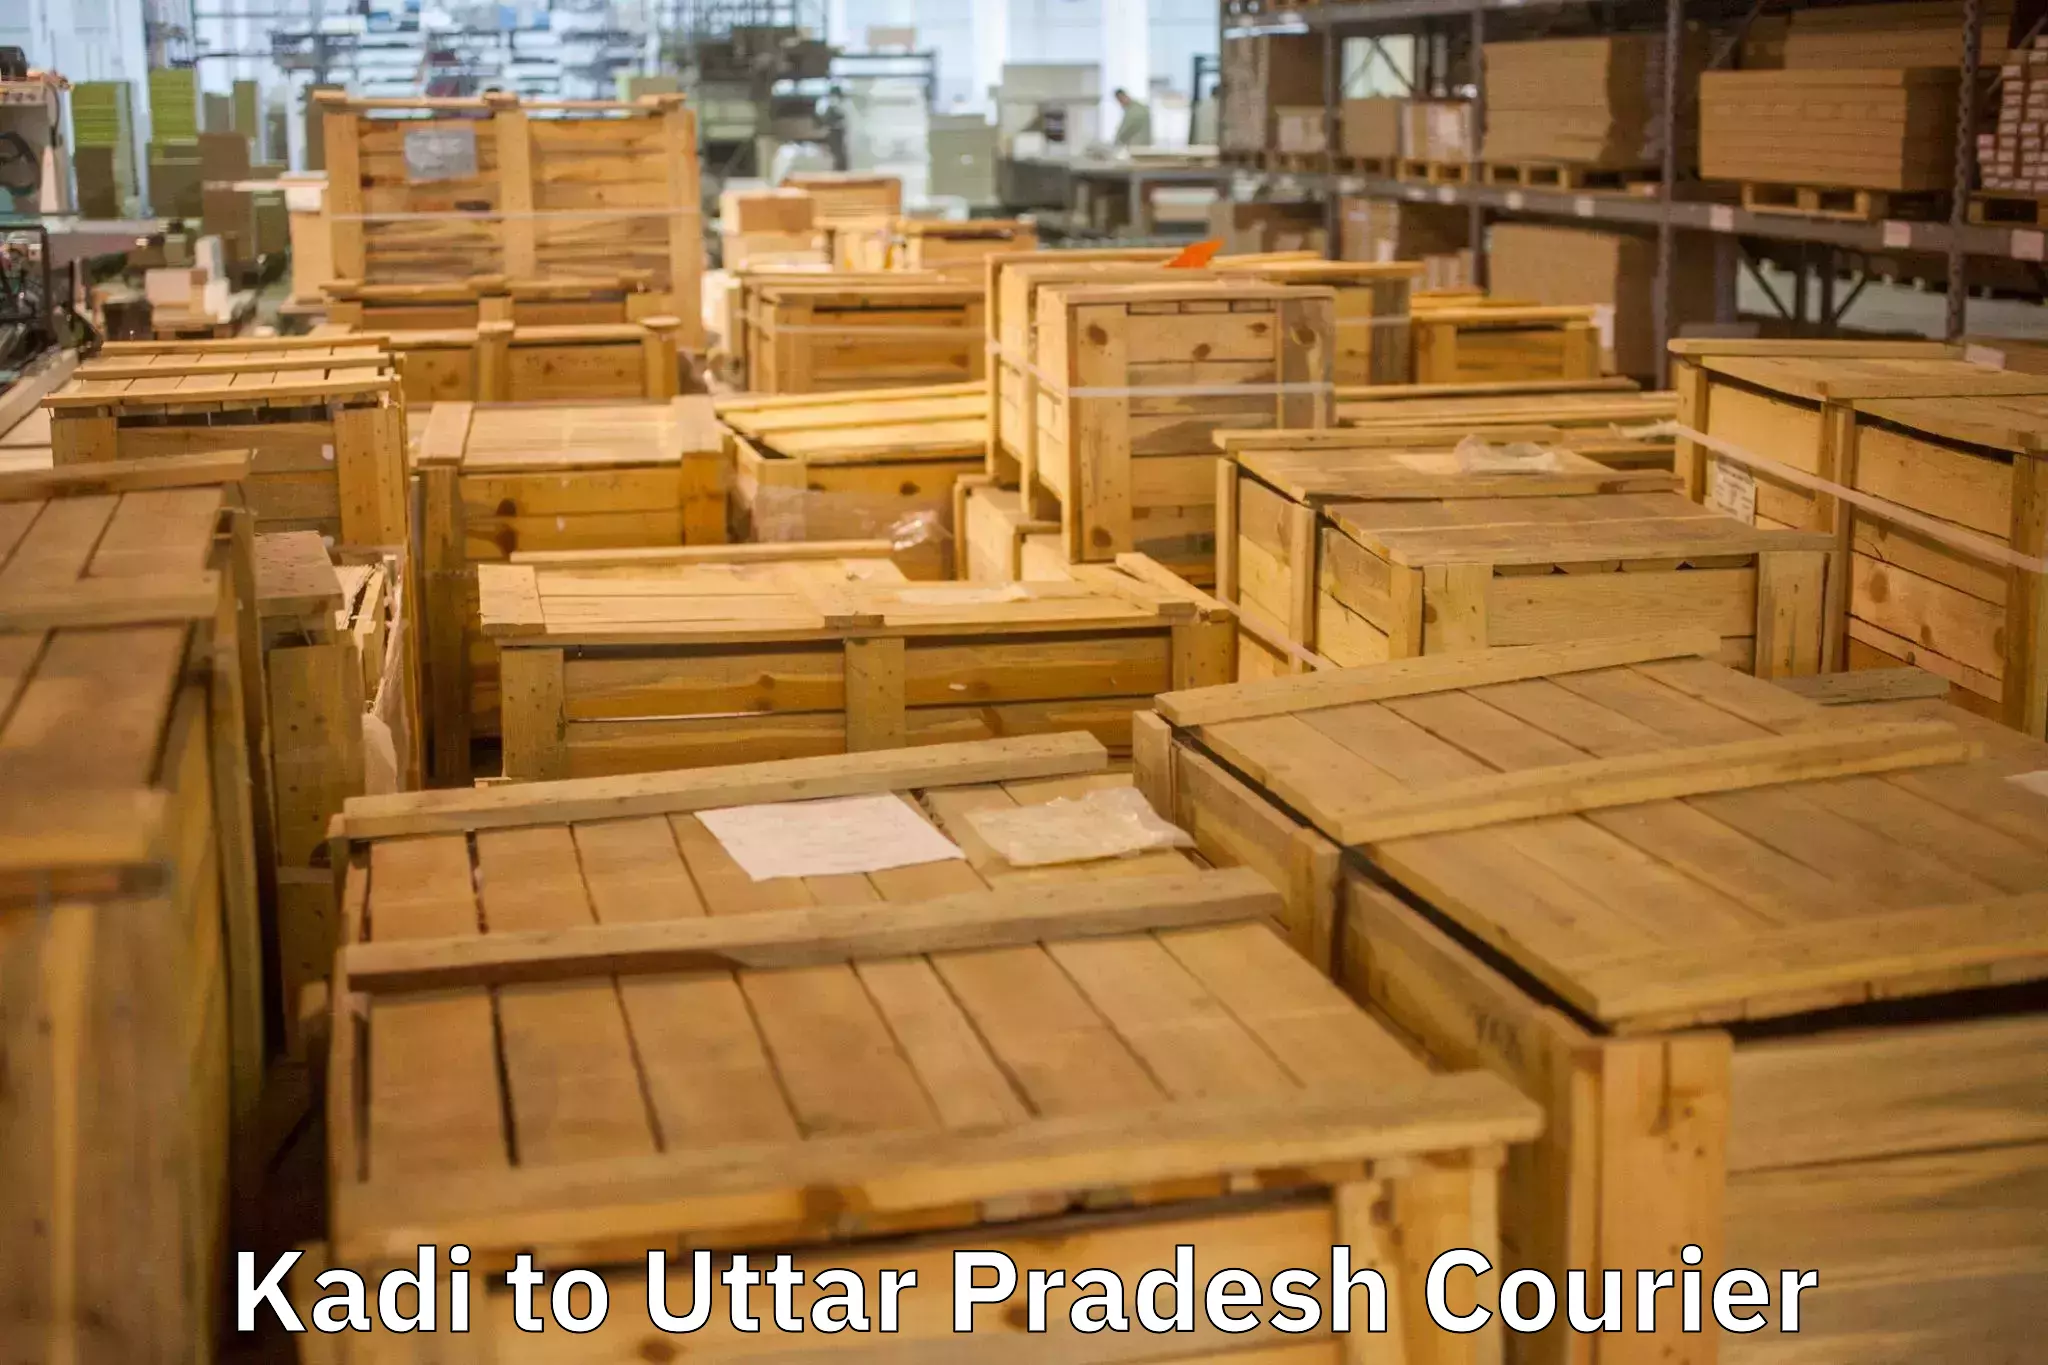 Reliable household shifting Kadi to Uttar Pradesh